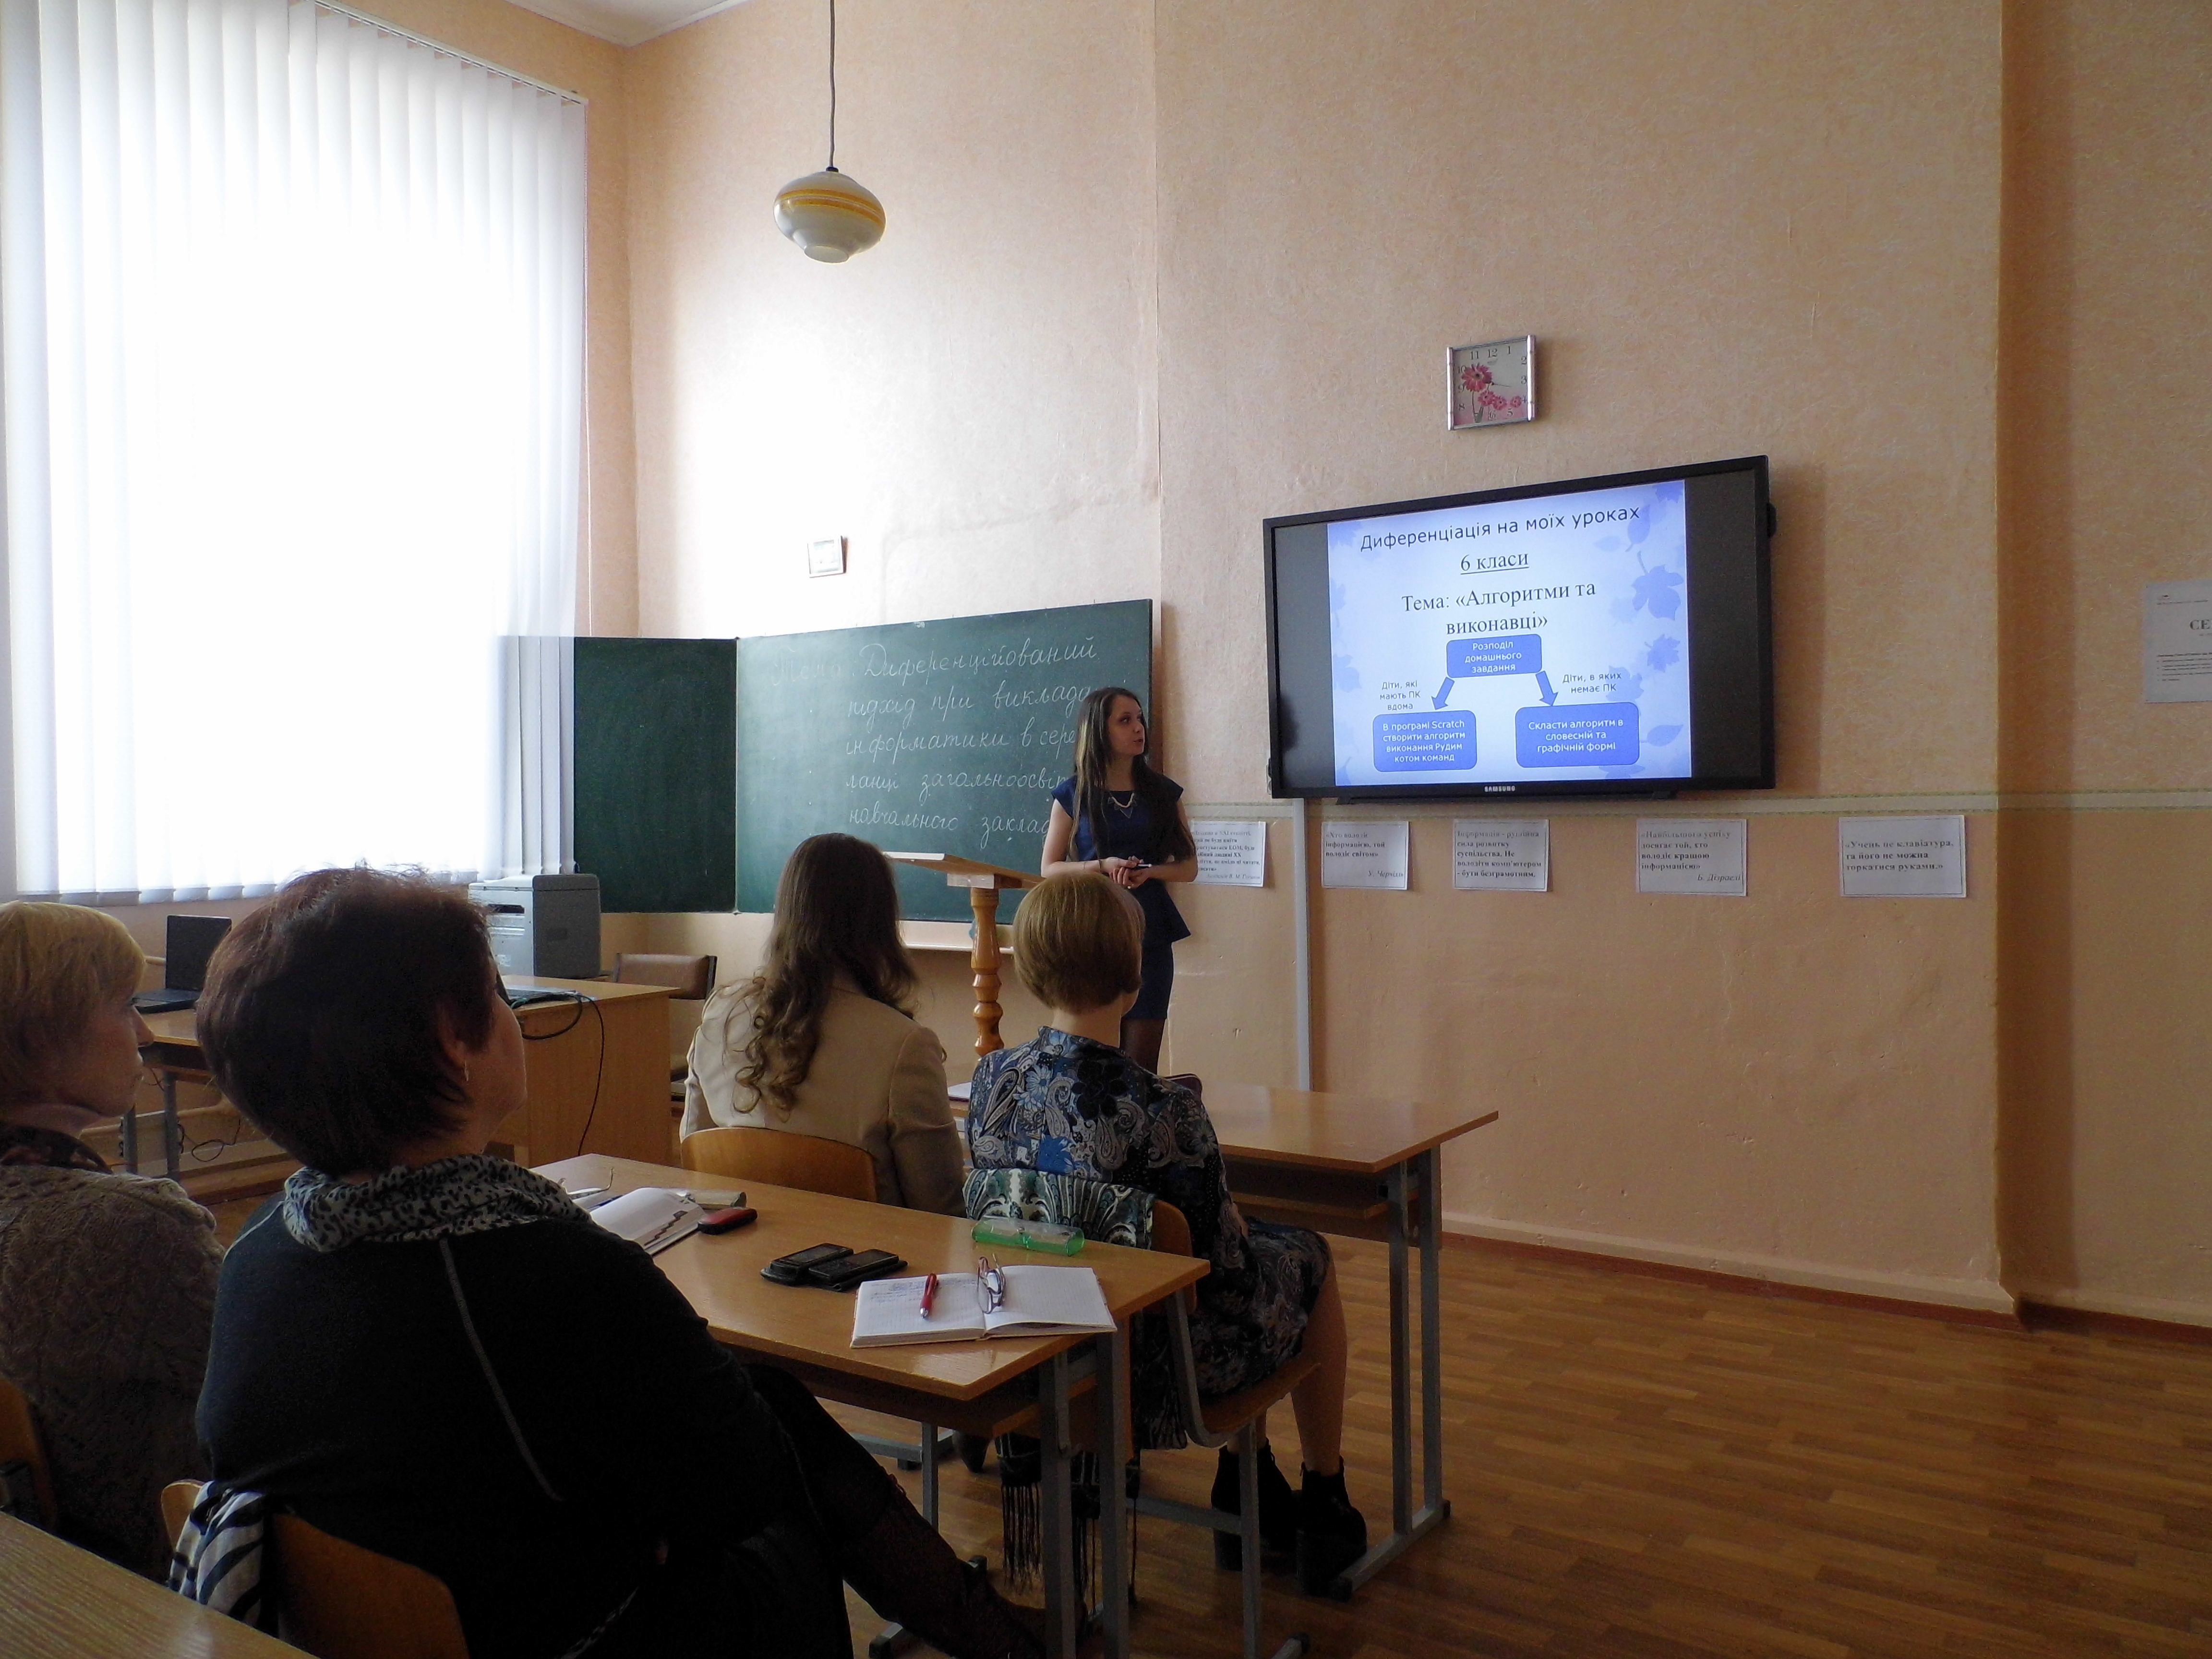 http://pixel.ucoz.ua/seminar/IMG_7927.jpg